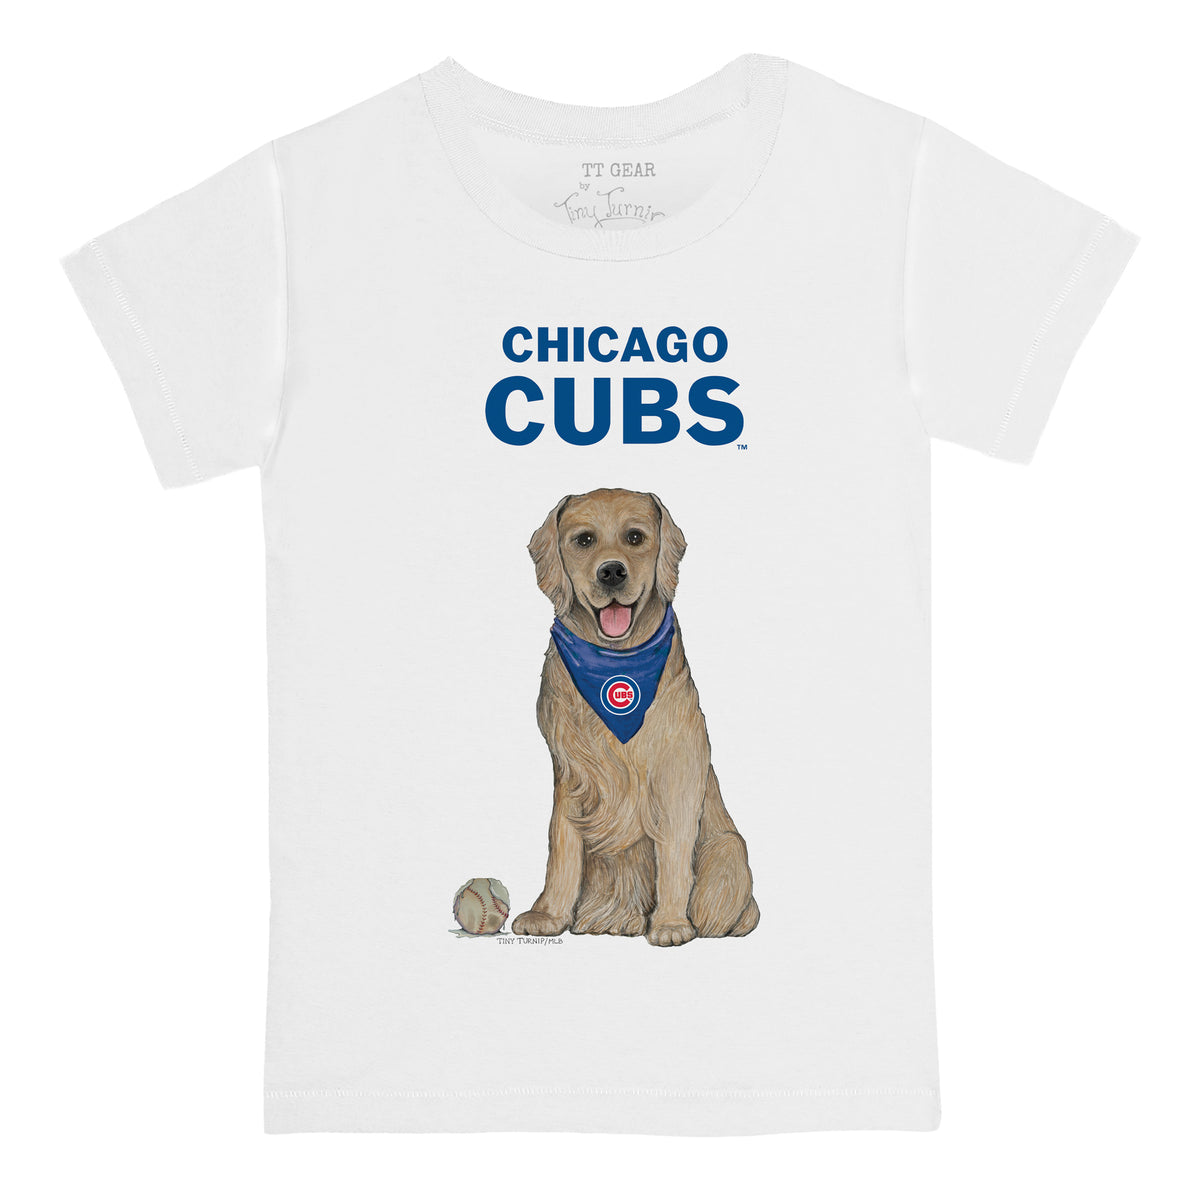 Chicago Cubs Golden Retriever Tee Shirt